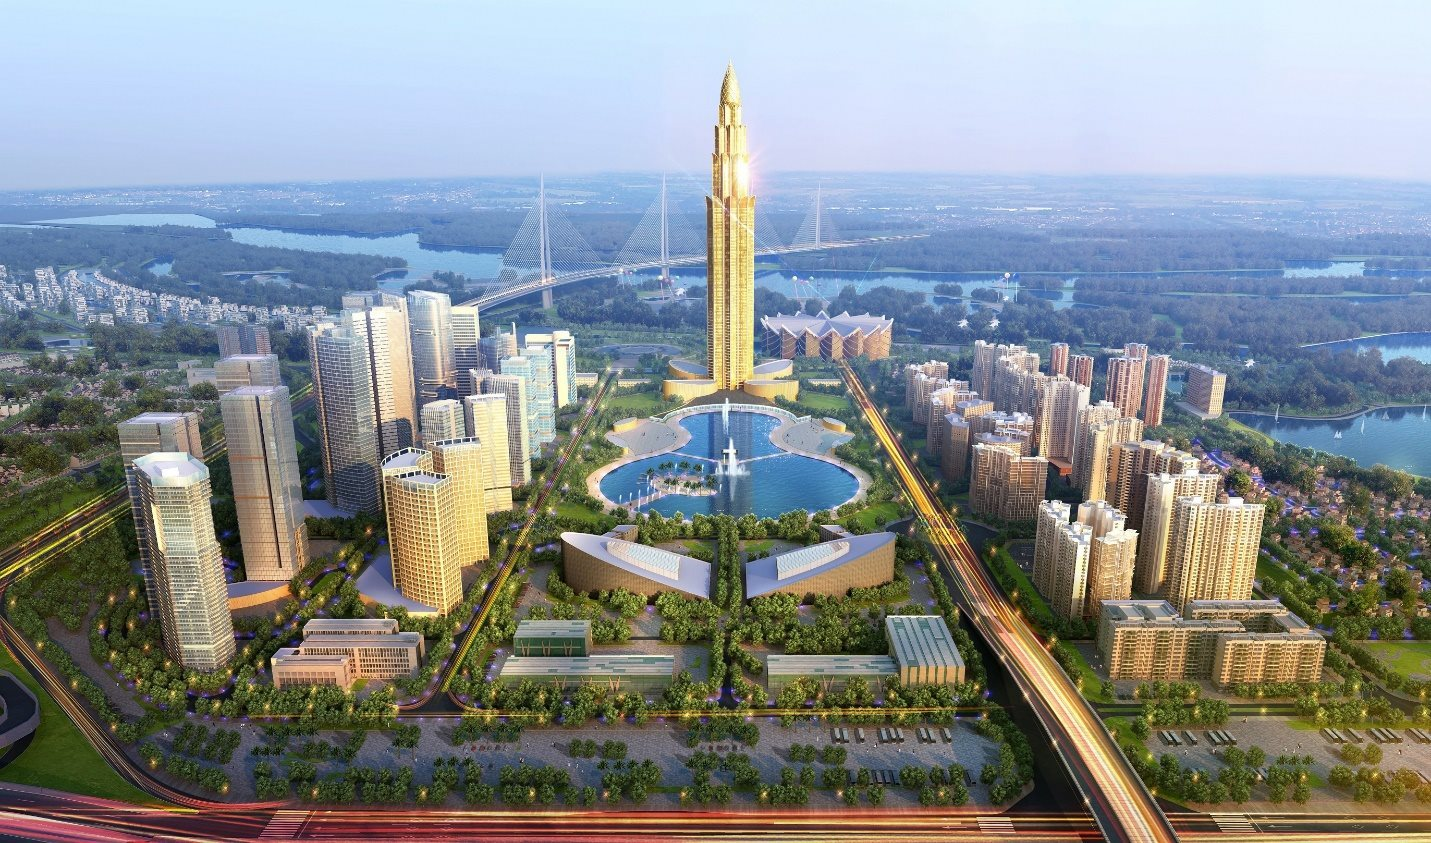 Cận cảnh khu đất chuẩn bị xây tháp tài chính 108 tầng cao nhất Việt Nam - Ảnh 2.